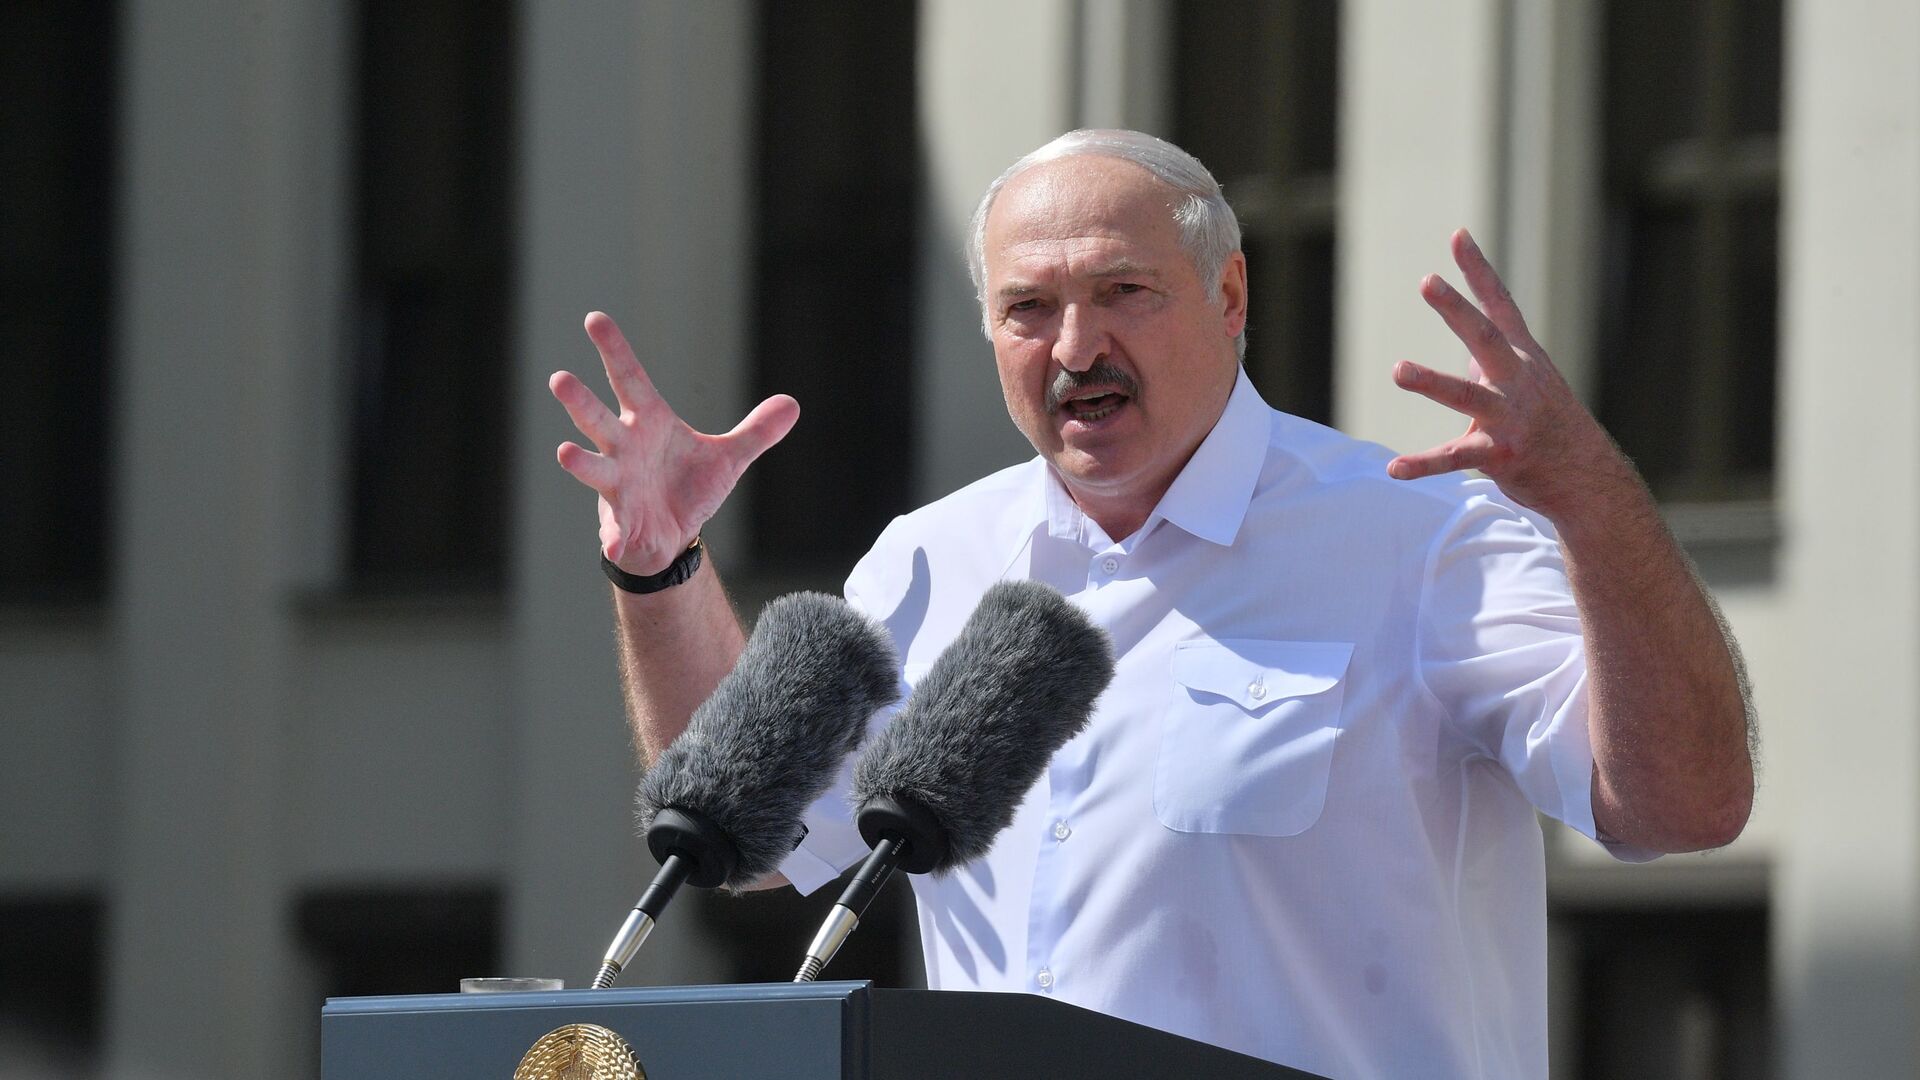 Alexandr Lukashenko, presidente de Bielorrusia  - Sputnik Mundo, 1920, 09.08.2021